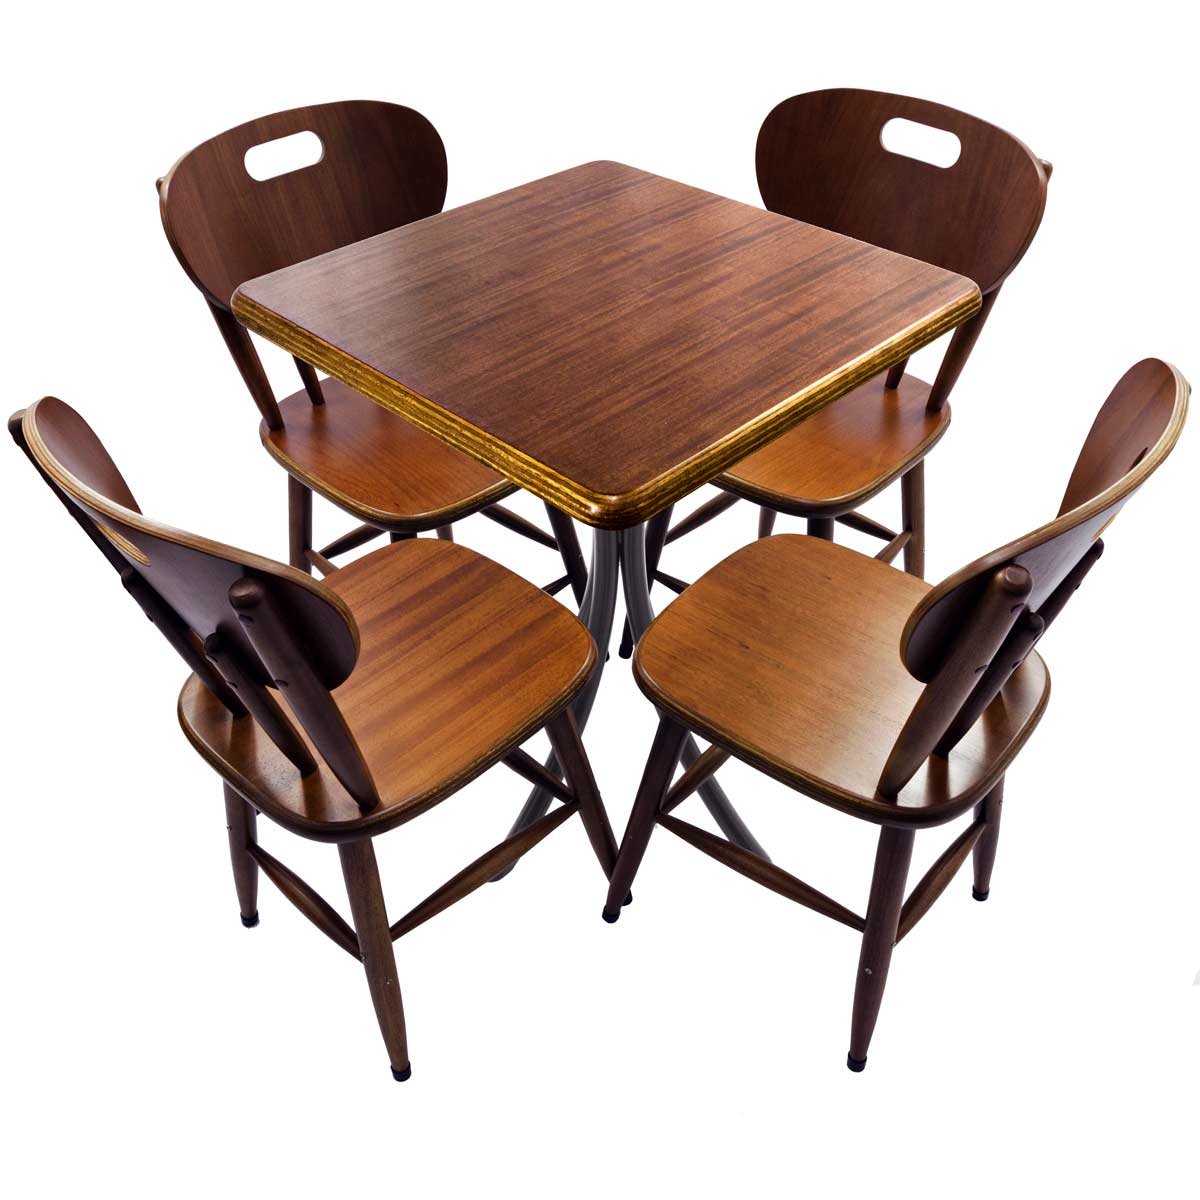 Conjunto mesa 60x60 cm com 4 cadeiras para cozinha pequena - Laminado imbuia